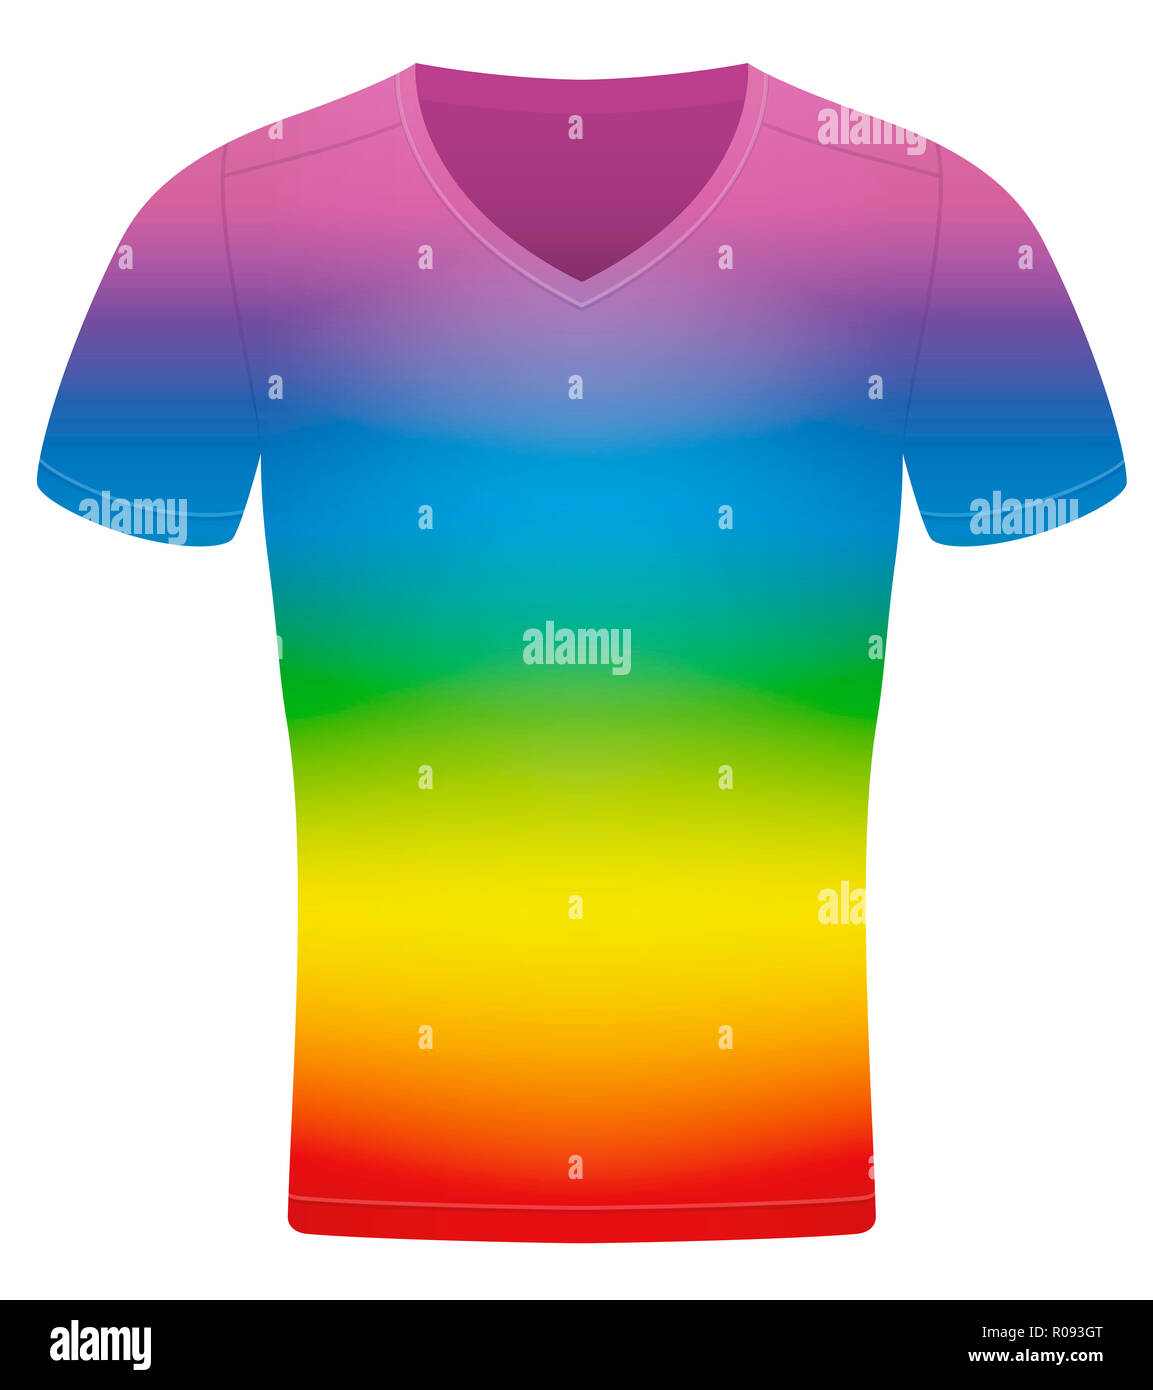 Camisa arcoiris Imágenes recortadas de stock - Alamy